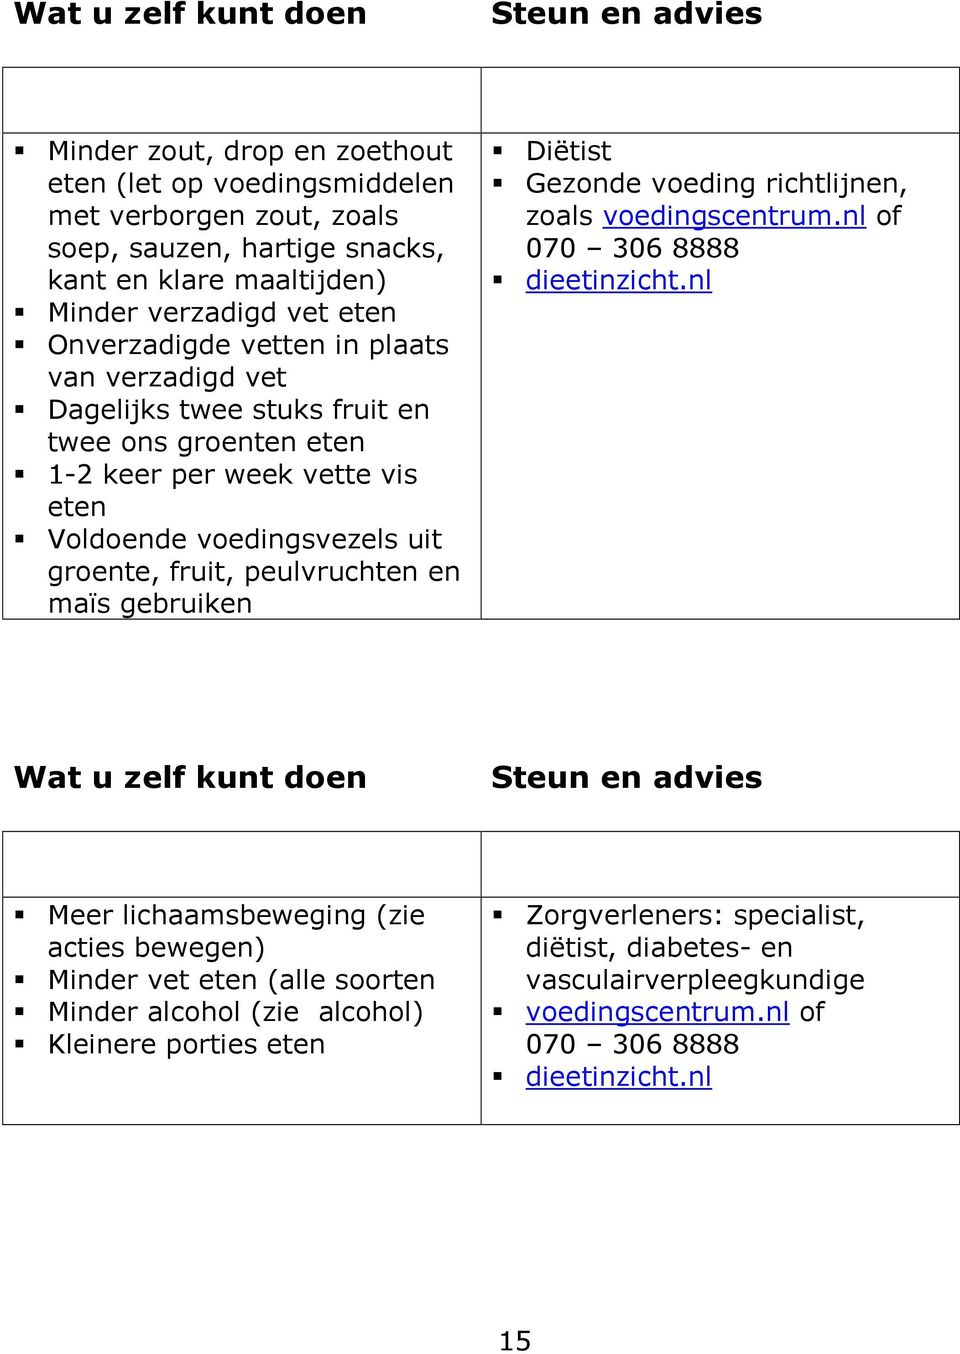 maïs gebruiken Diëtist Gezonde voeding richtlijnen, zoals voedingscentrum.nl of 070 306 8888 dieetinzicht.